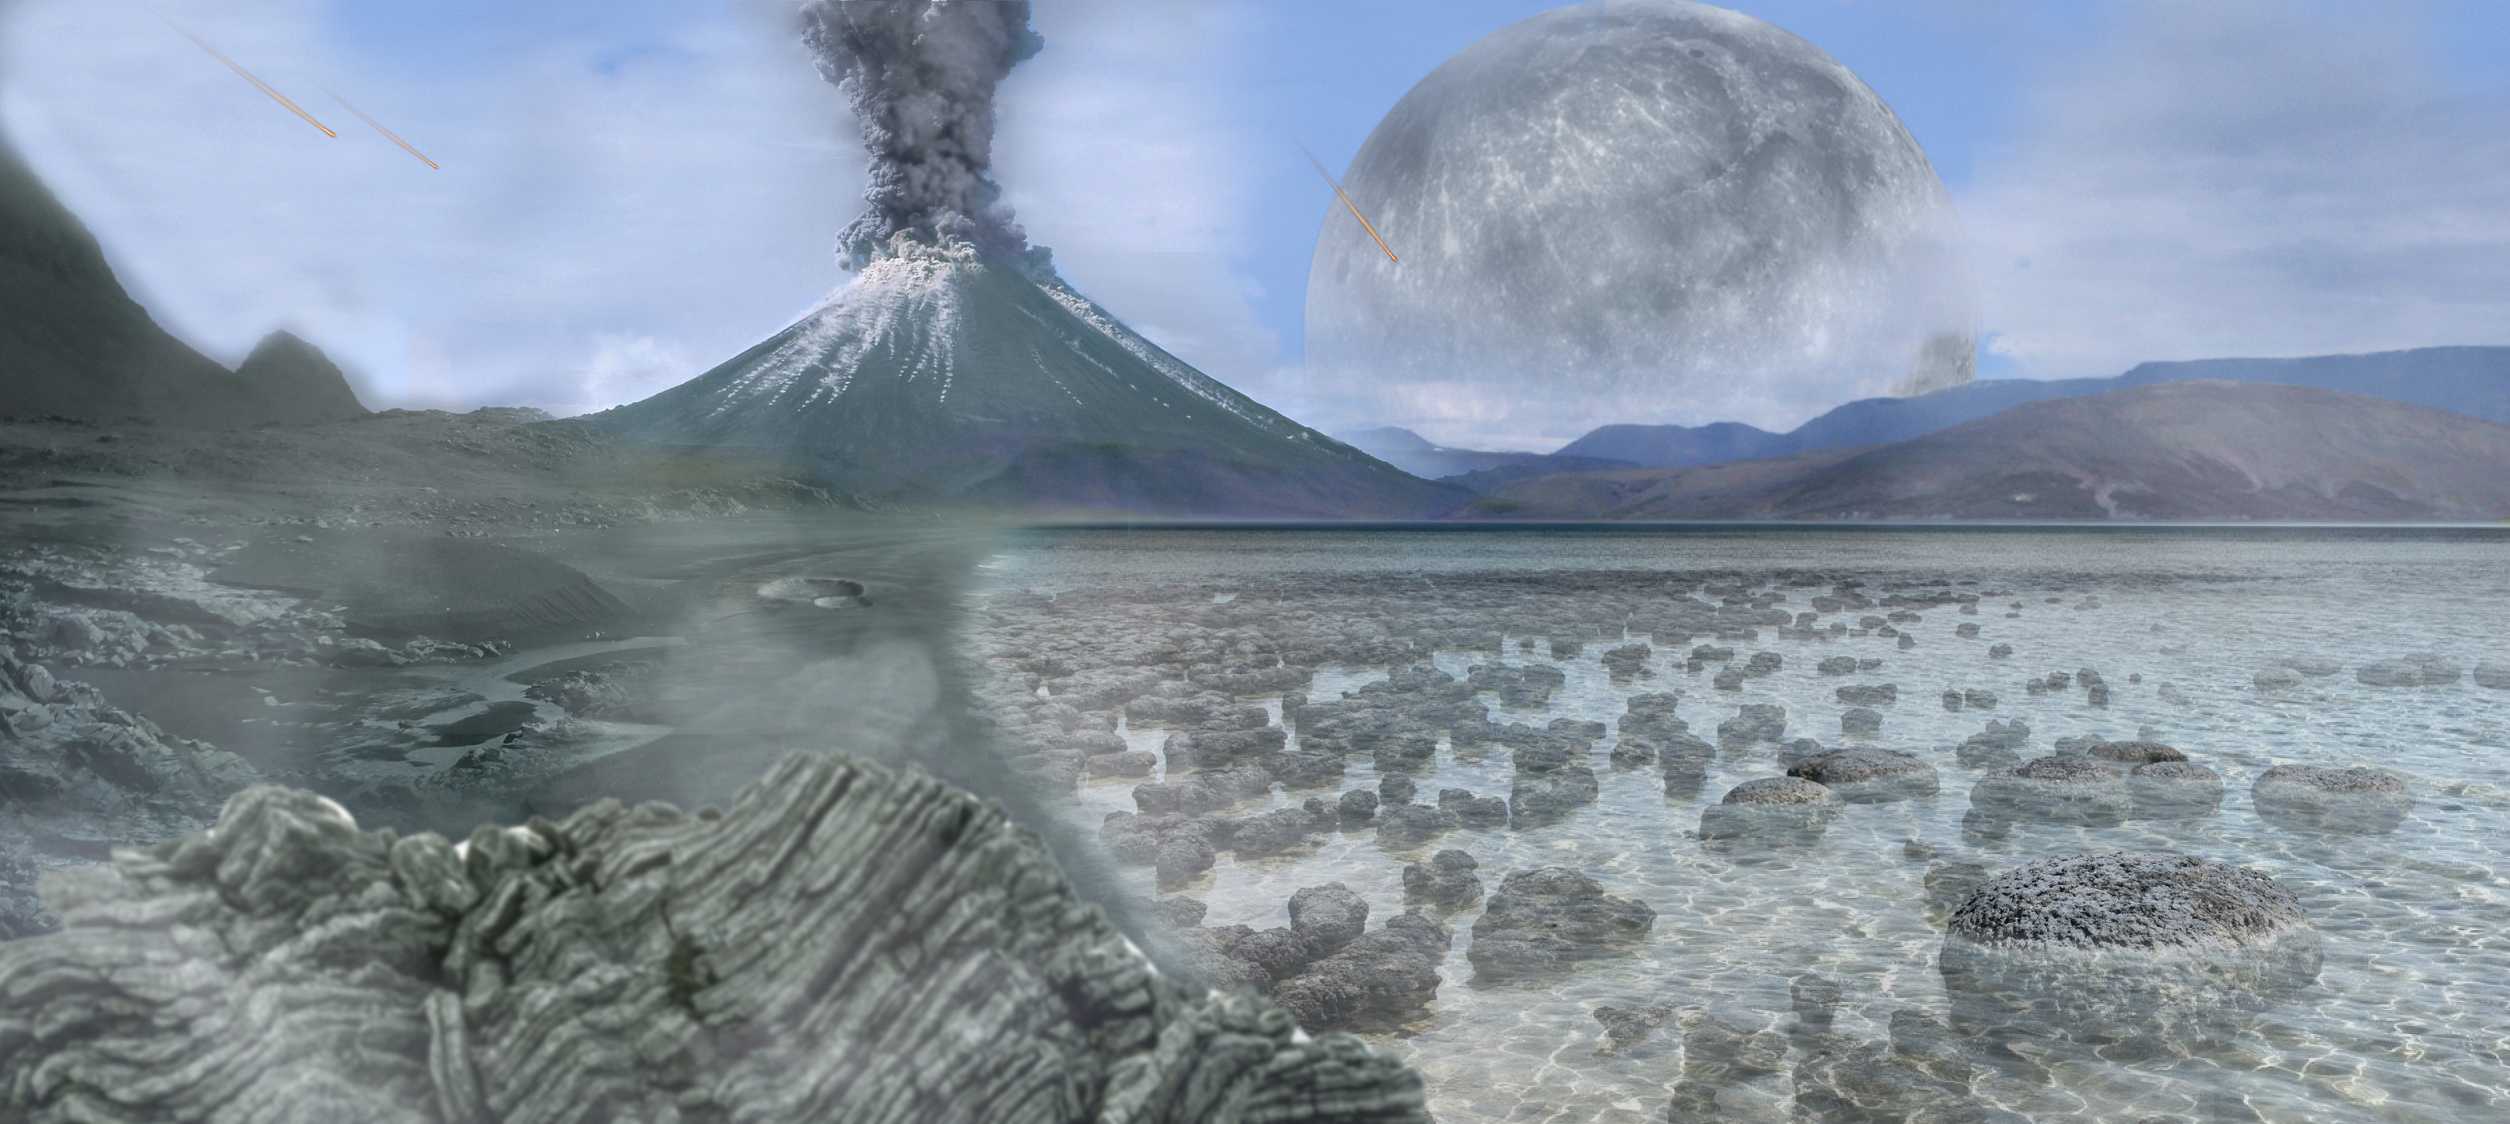 Источником первого кислорода на Земле была не только жизнь